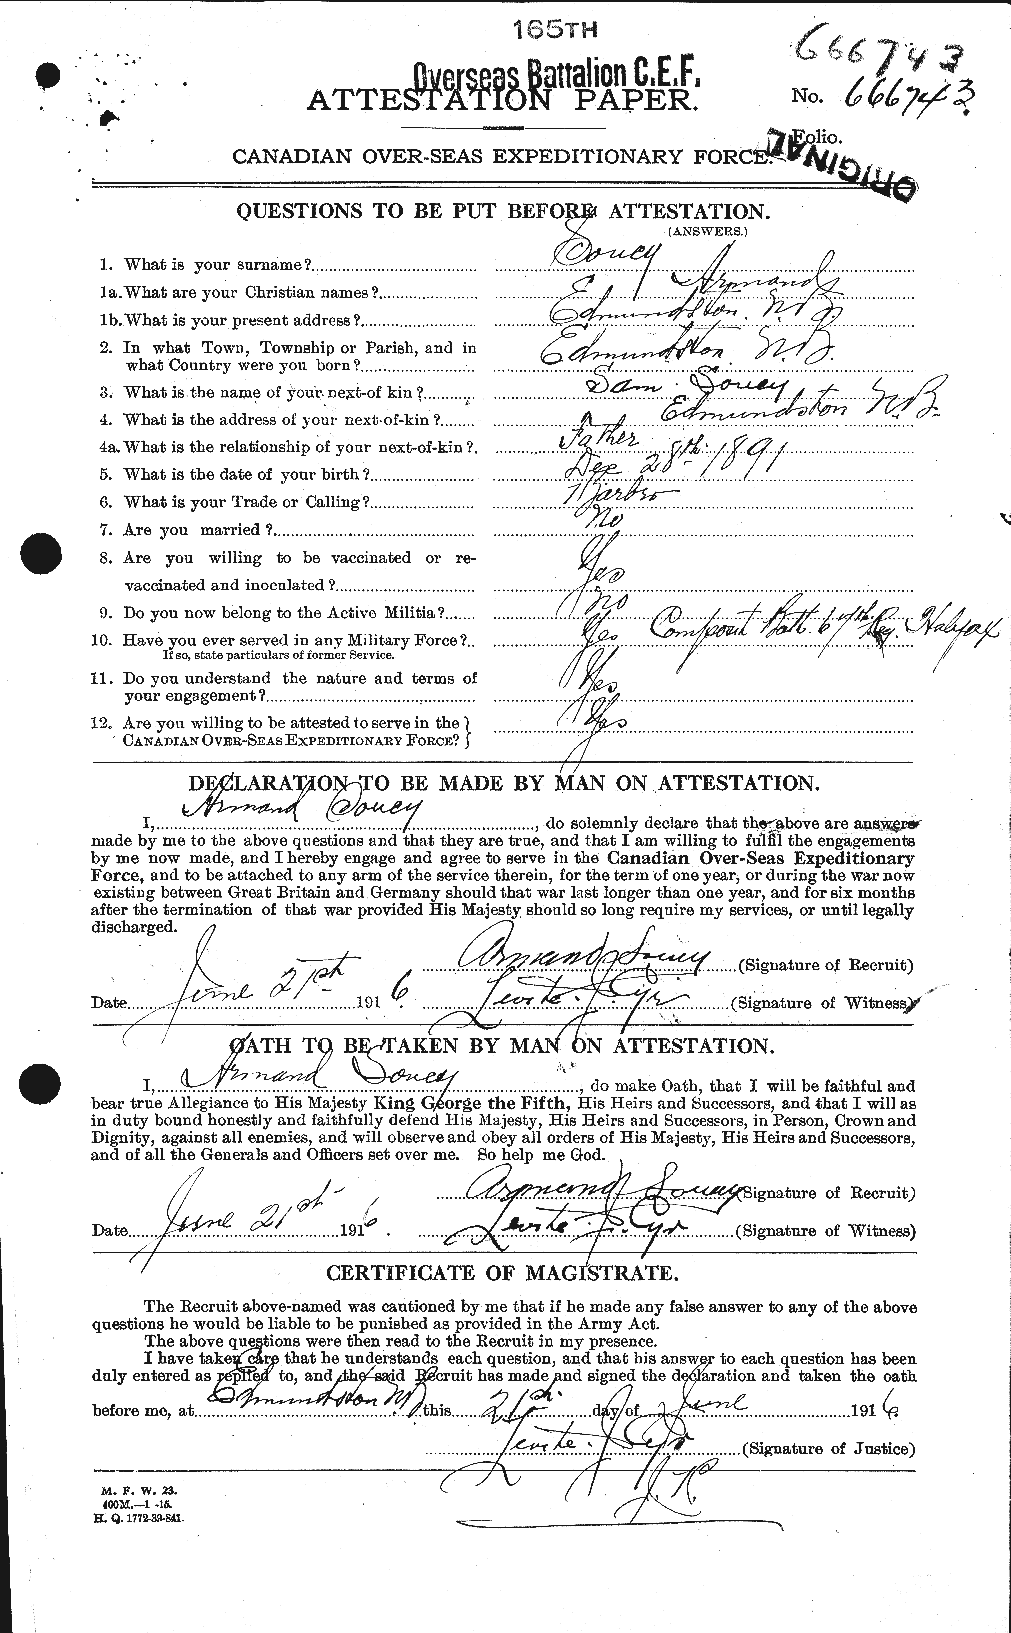 Dossiers du Personnel de la Première Guerre mondiale - CEC 109576a